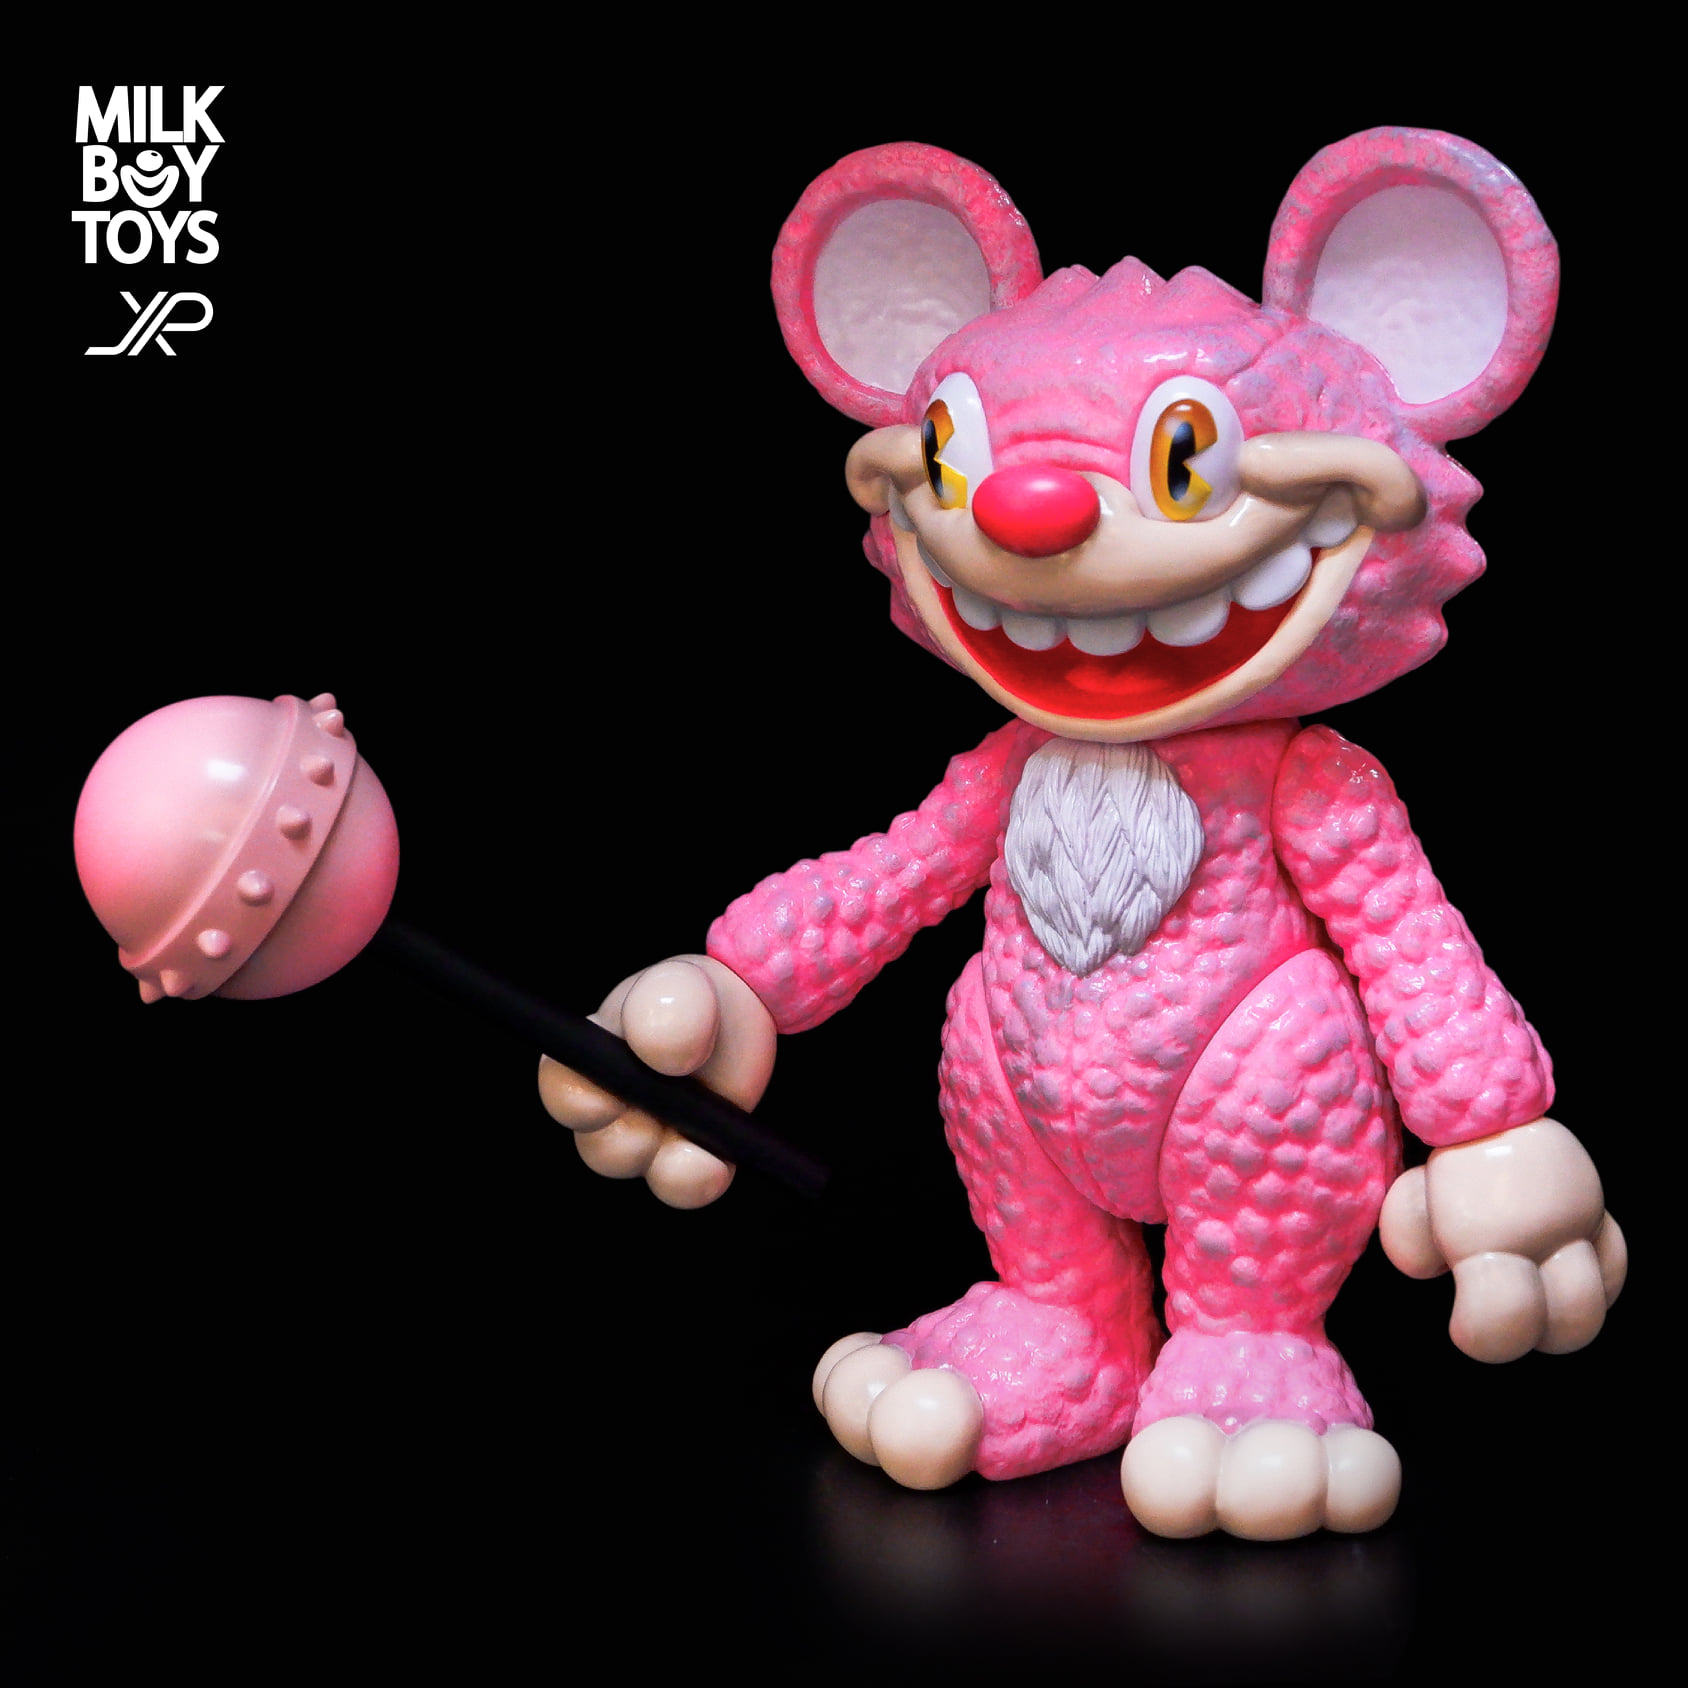 IT Bear the animated by JPX x Milkboytoys - Vinyl Pulse